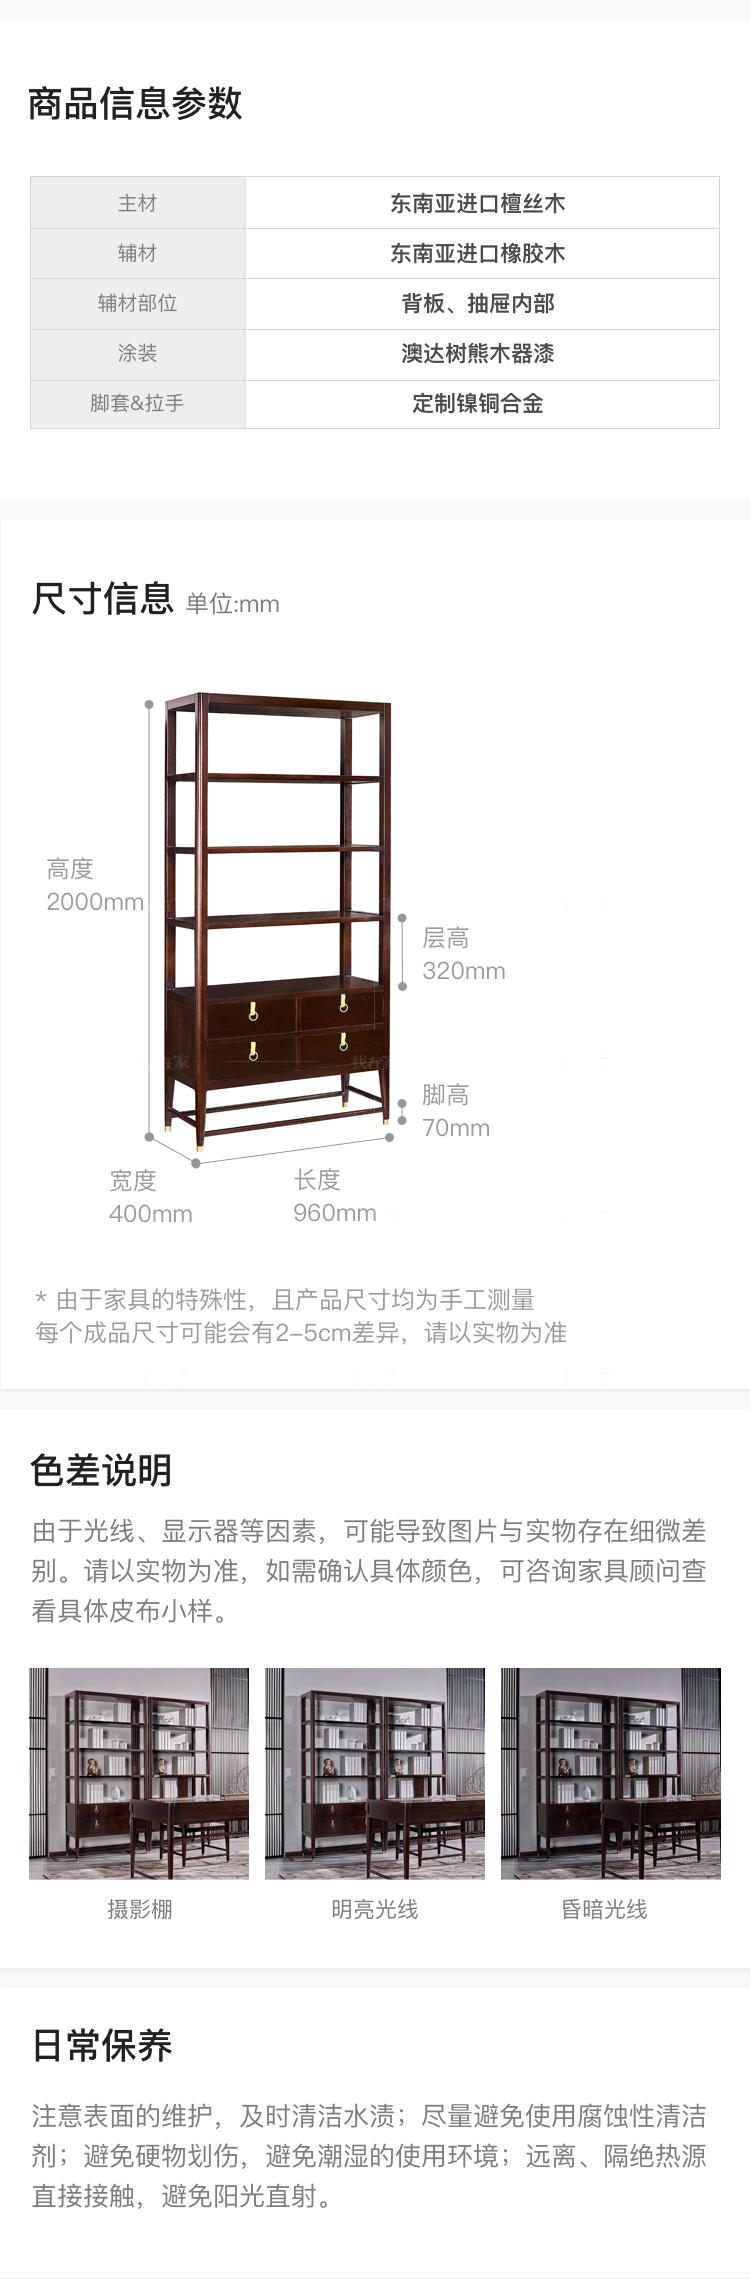 新中式风格疏影书架的家具详细介绍